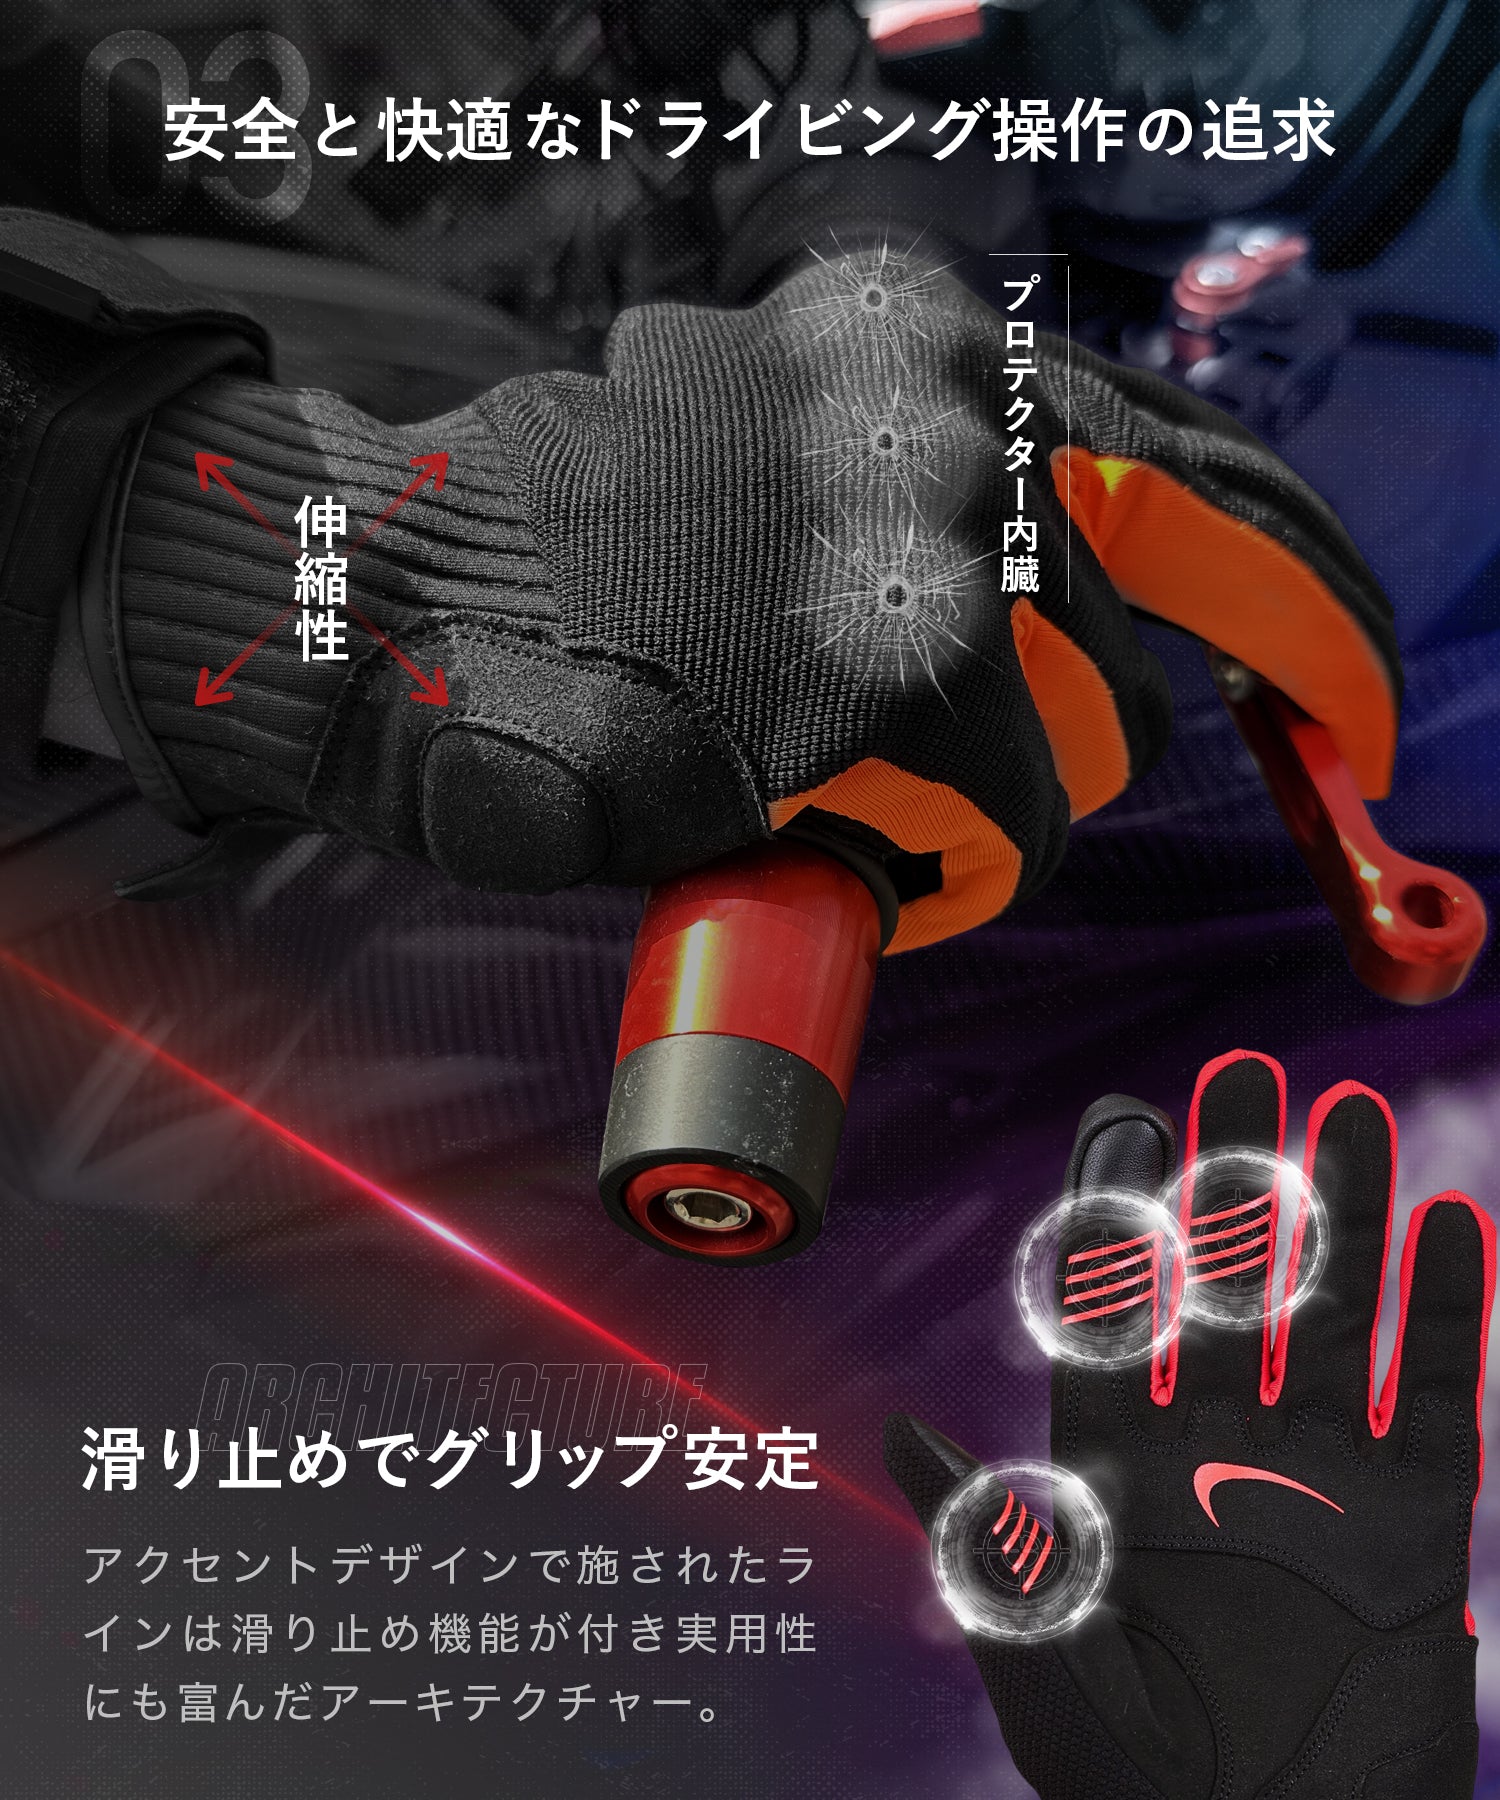 バイク用グローブ メッシュ プロテクター タッチパネル対応 KDR-GL3 – Kaedear(カエディア)